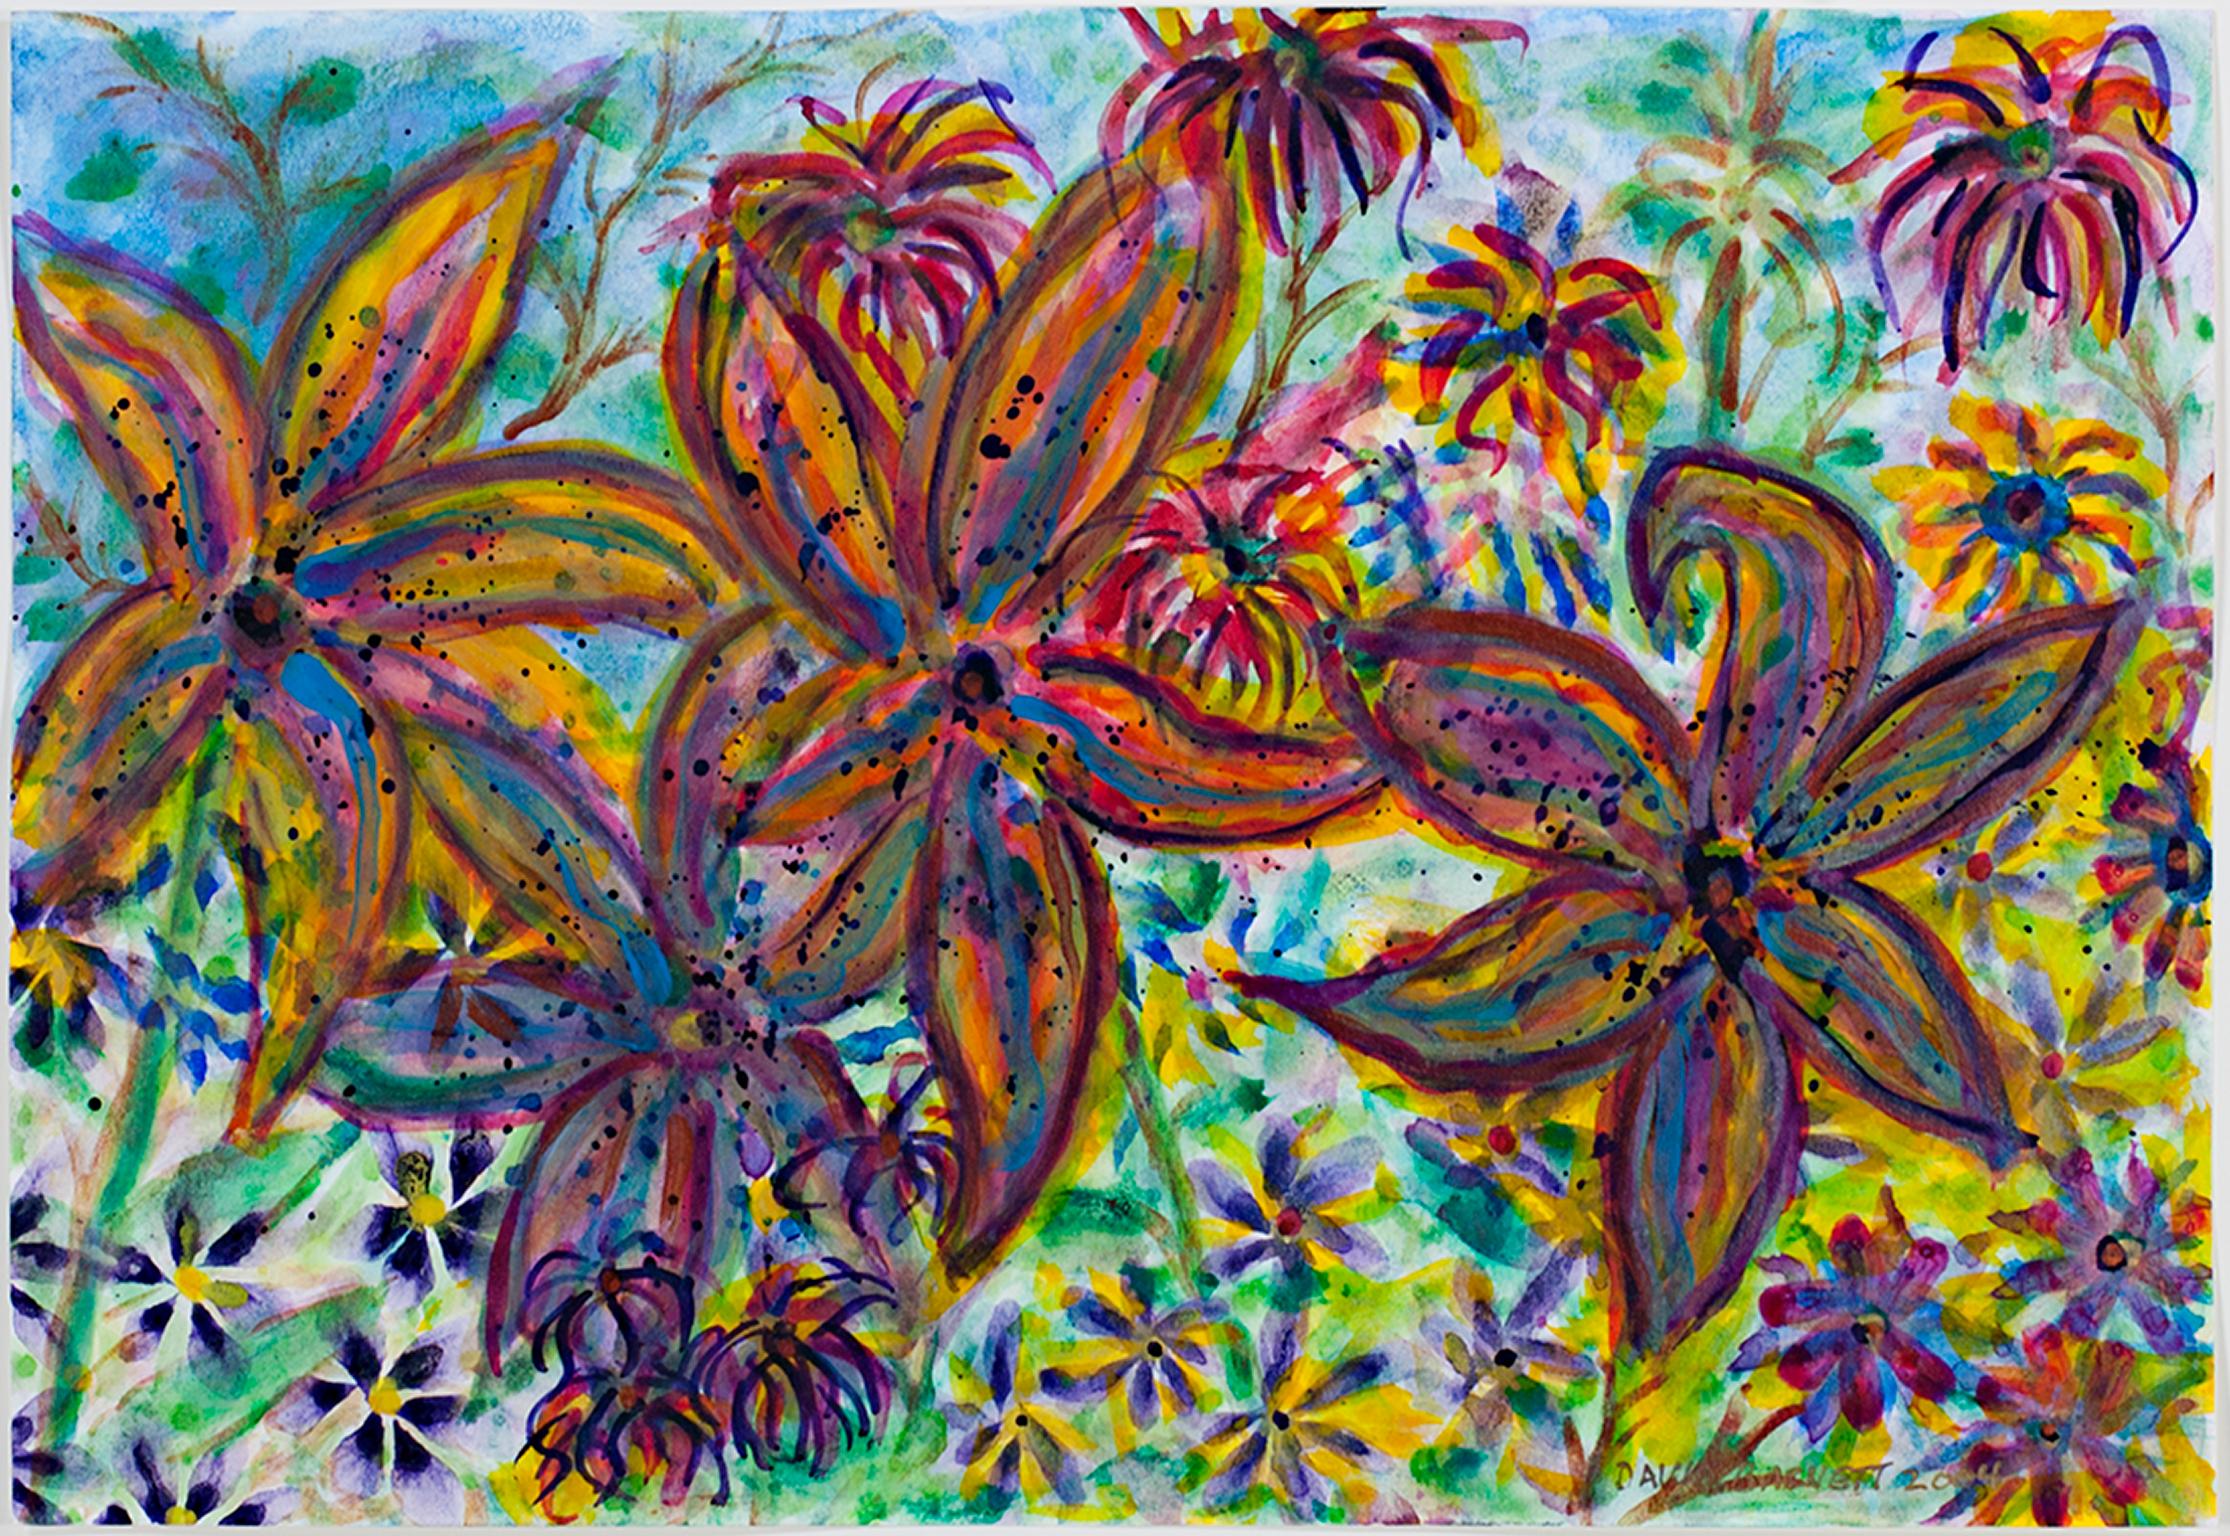 "Chinese Trumpet Lilies Close Up" ist ein Original-Mixed-Media-Gemälde von David Barnett, das Aquarell und schillernde Acryl auf 100% Aquarellpapier enthält. Es ist rechts unten signiert und datiert. Das Bild zeigt im Vordergrund große